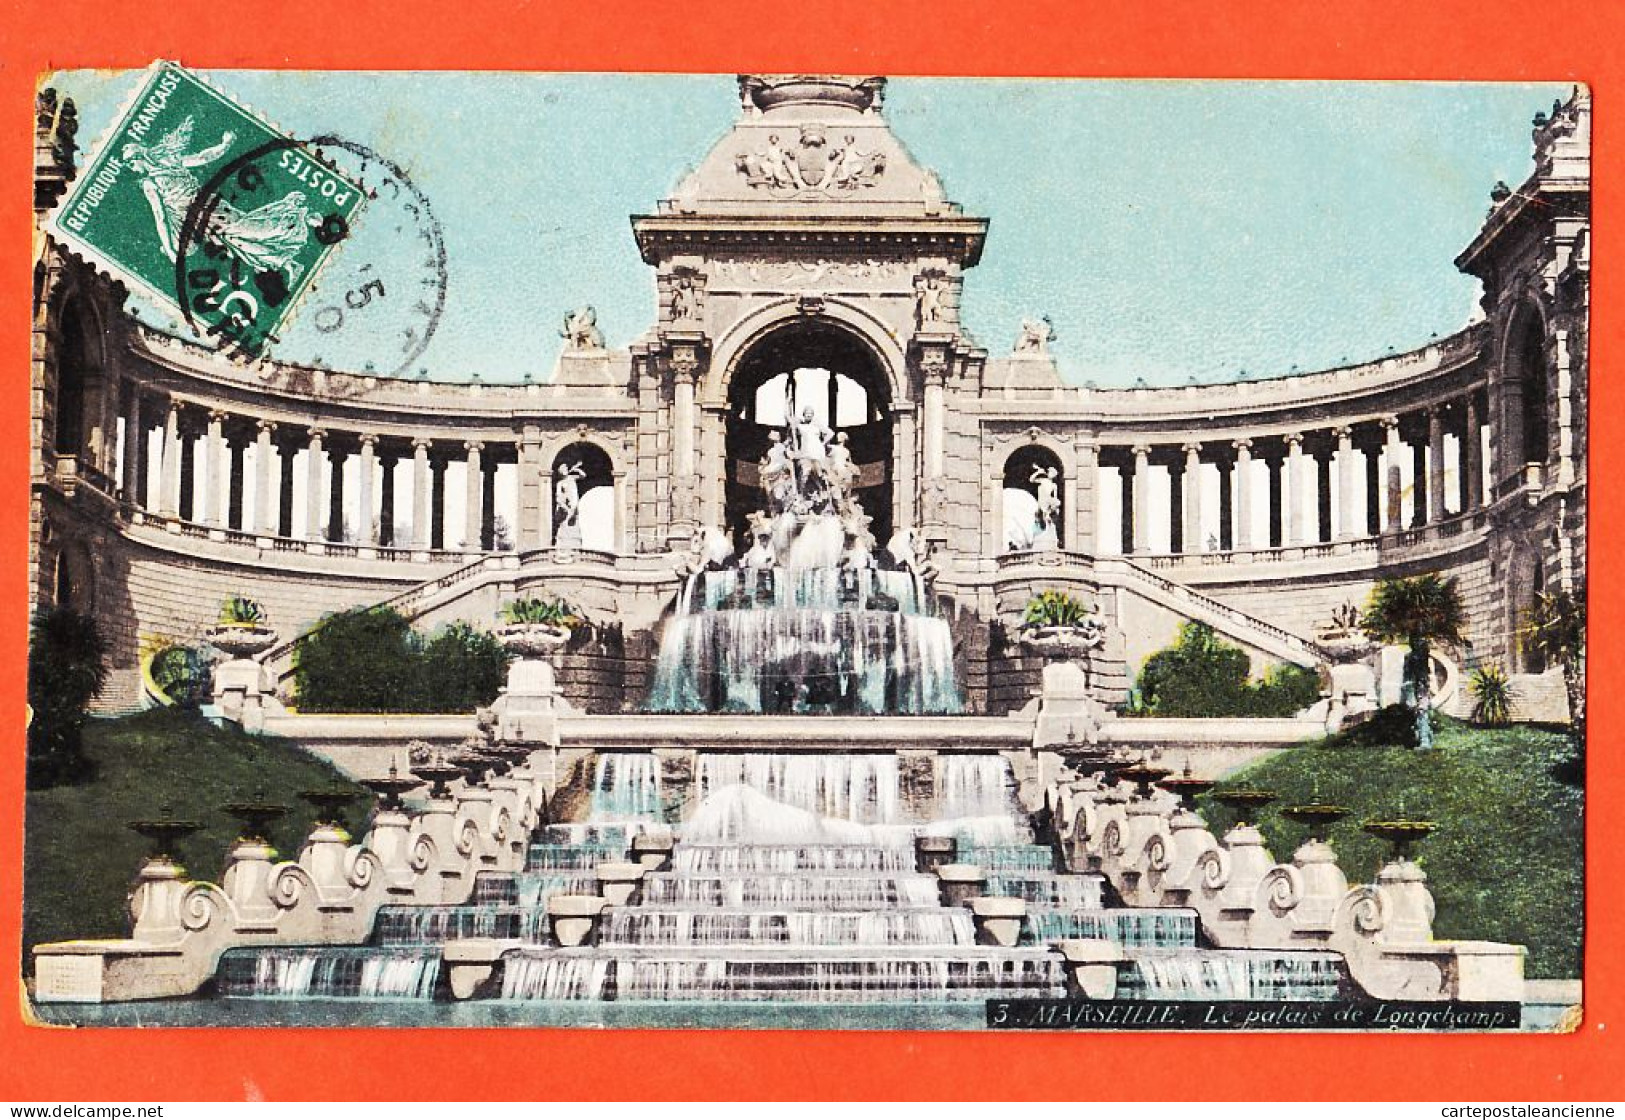 35018 / Aqua-Photo LEOPOLD VERGER 3 MARSEILLE (13) Palais LONGCHAMP 1909 à Honoré VILAREM Caporal 143e Inf - Canebière, Stadscentrum